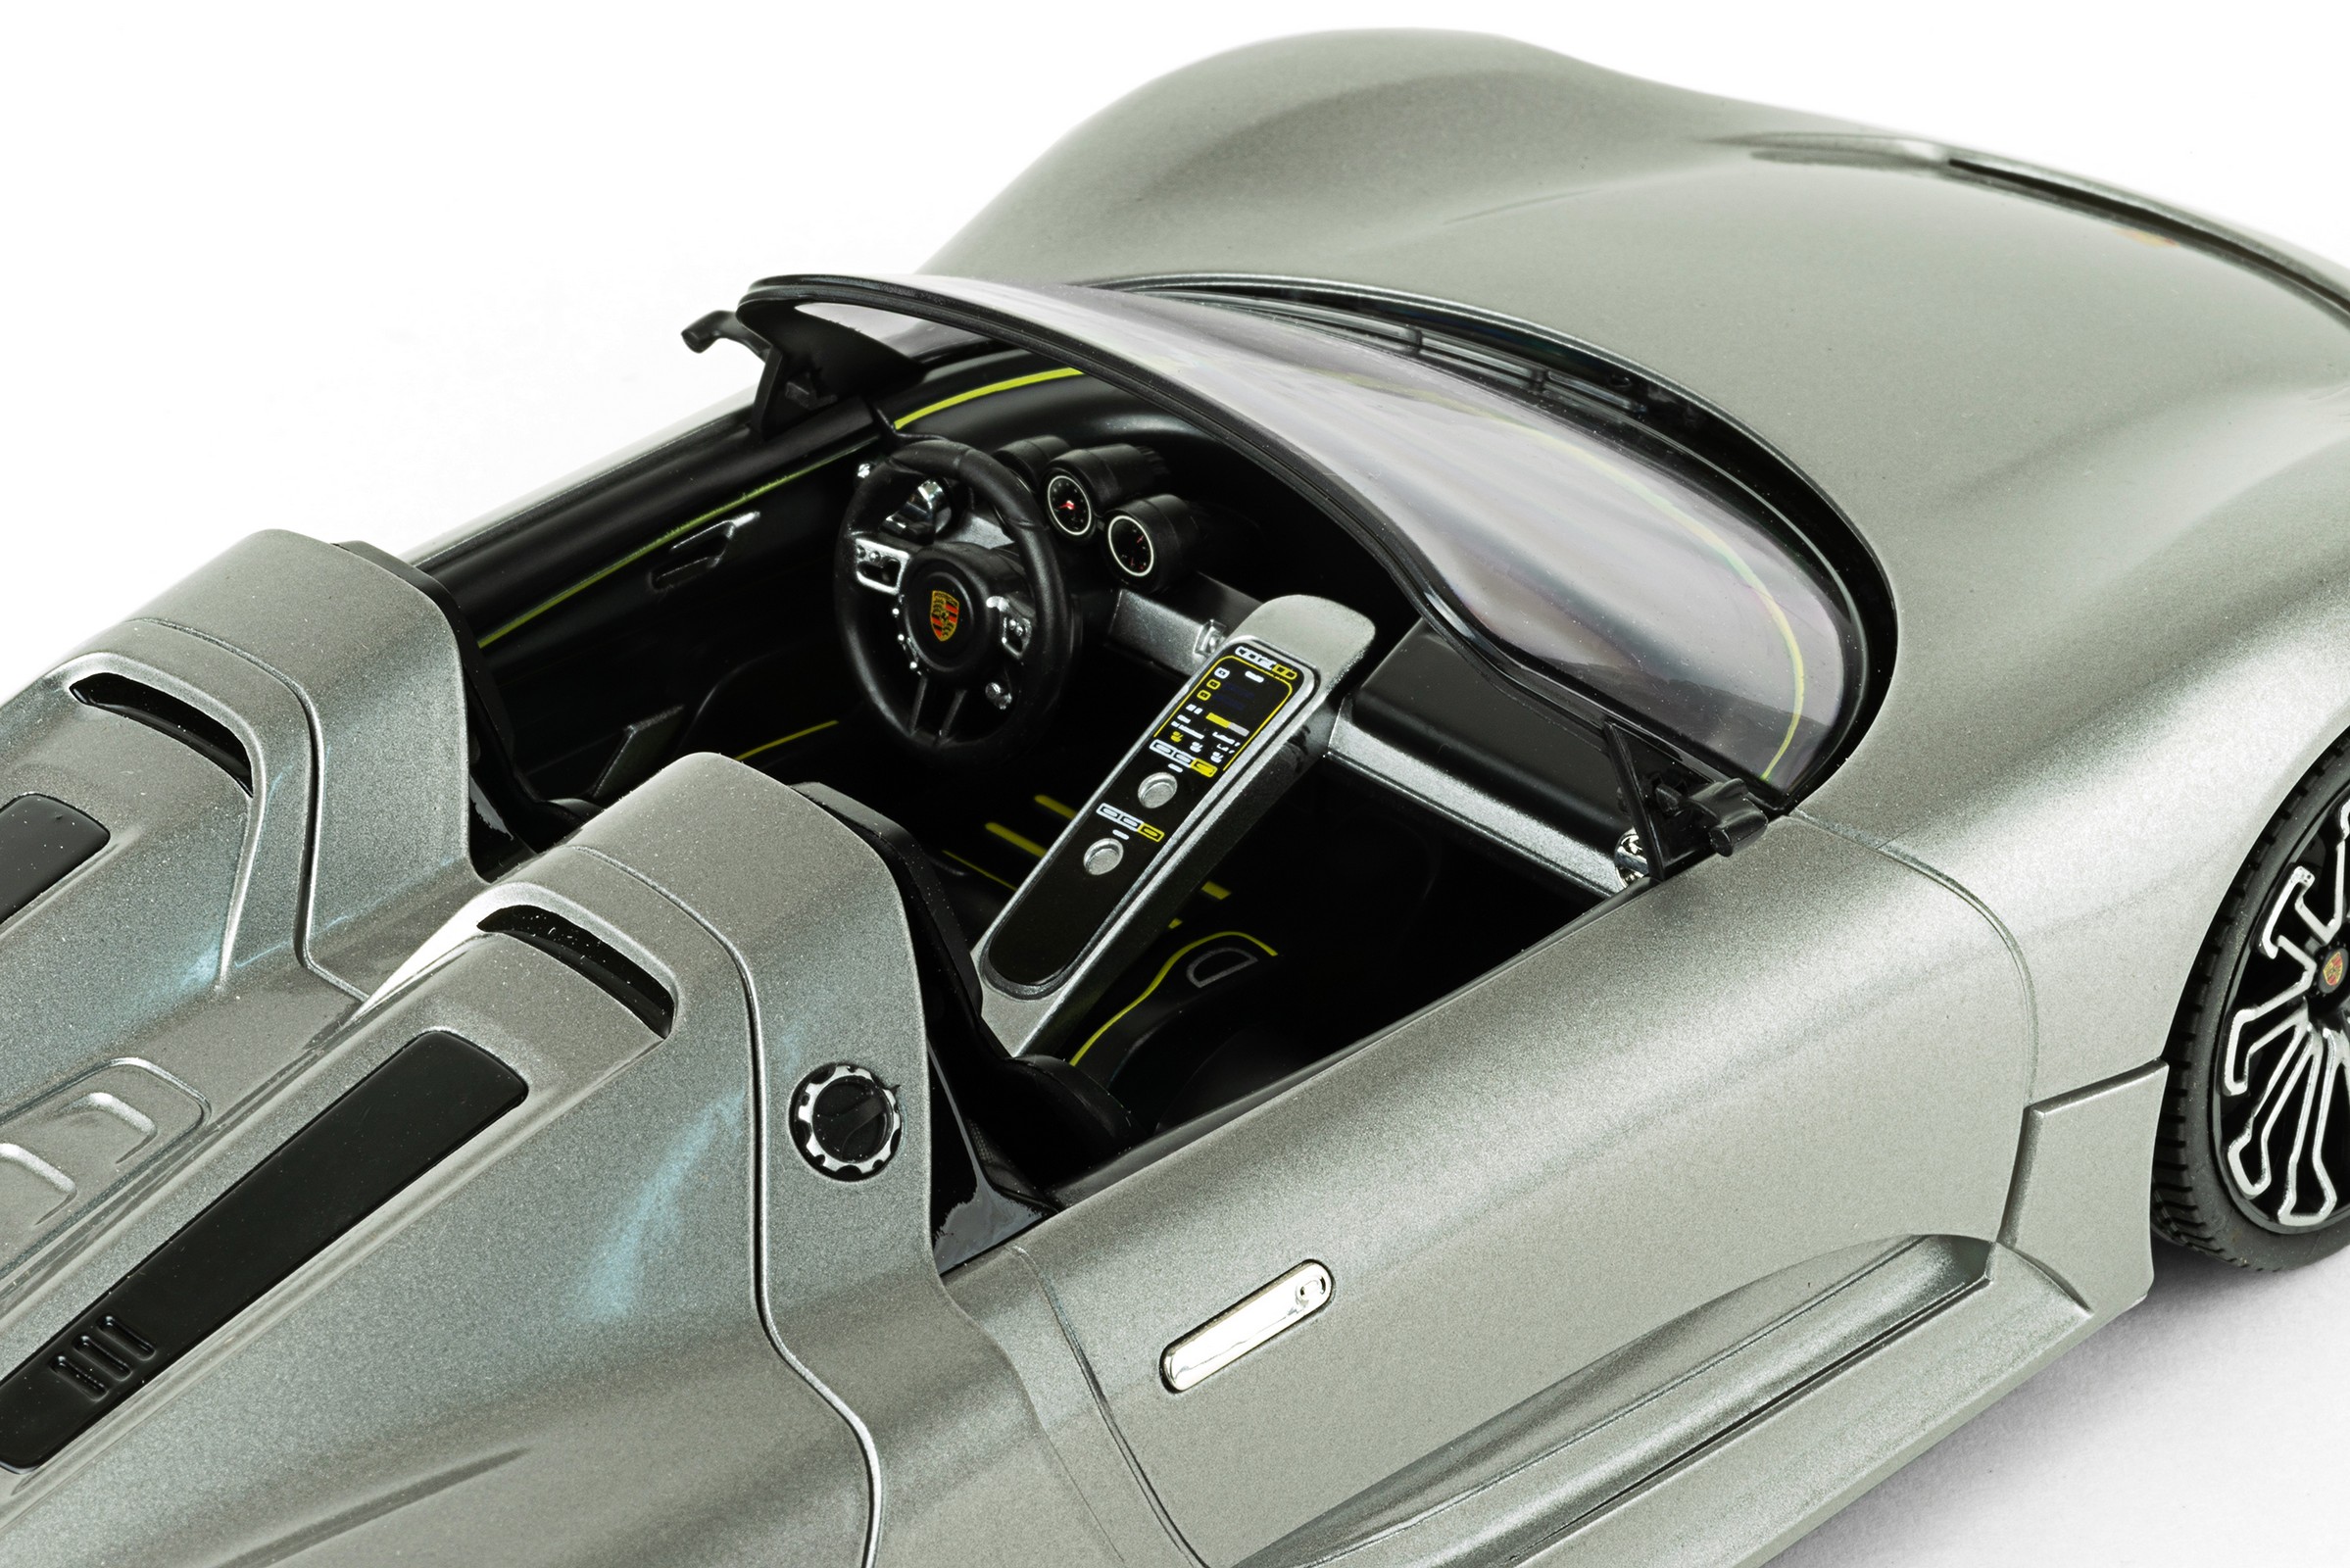 Ferngesteuertes RC Auto Kinder Spielzeug Geschenk Porsche 918 Spyder 33 cm